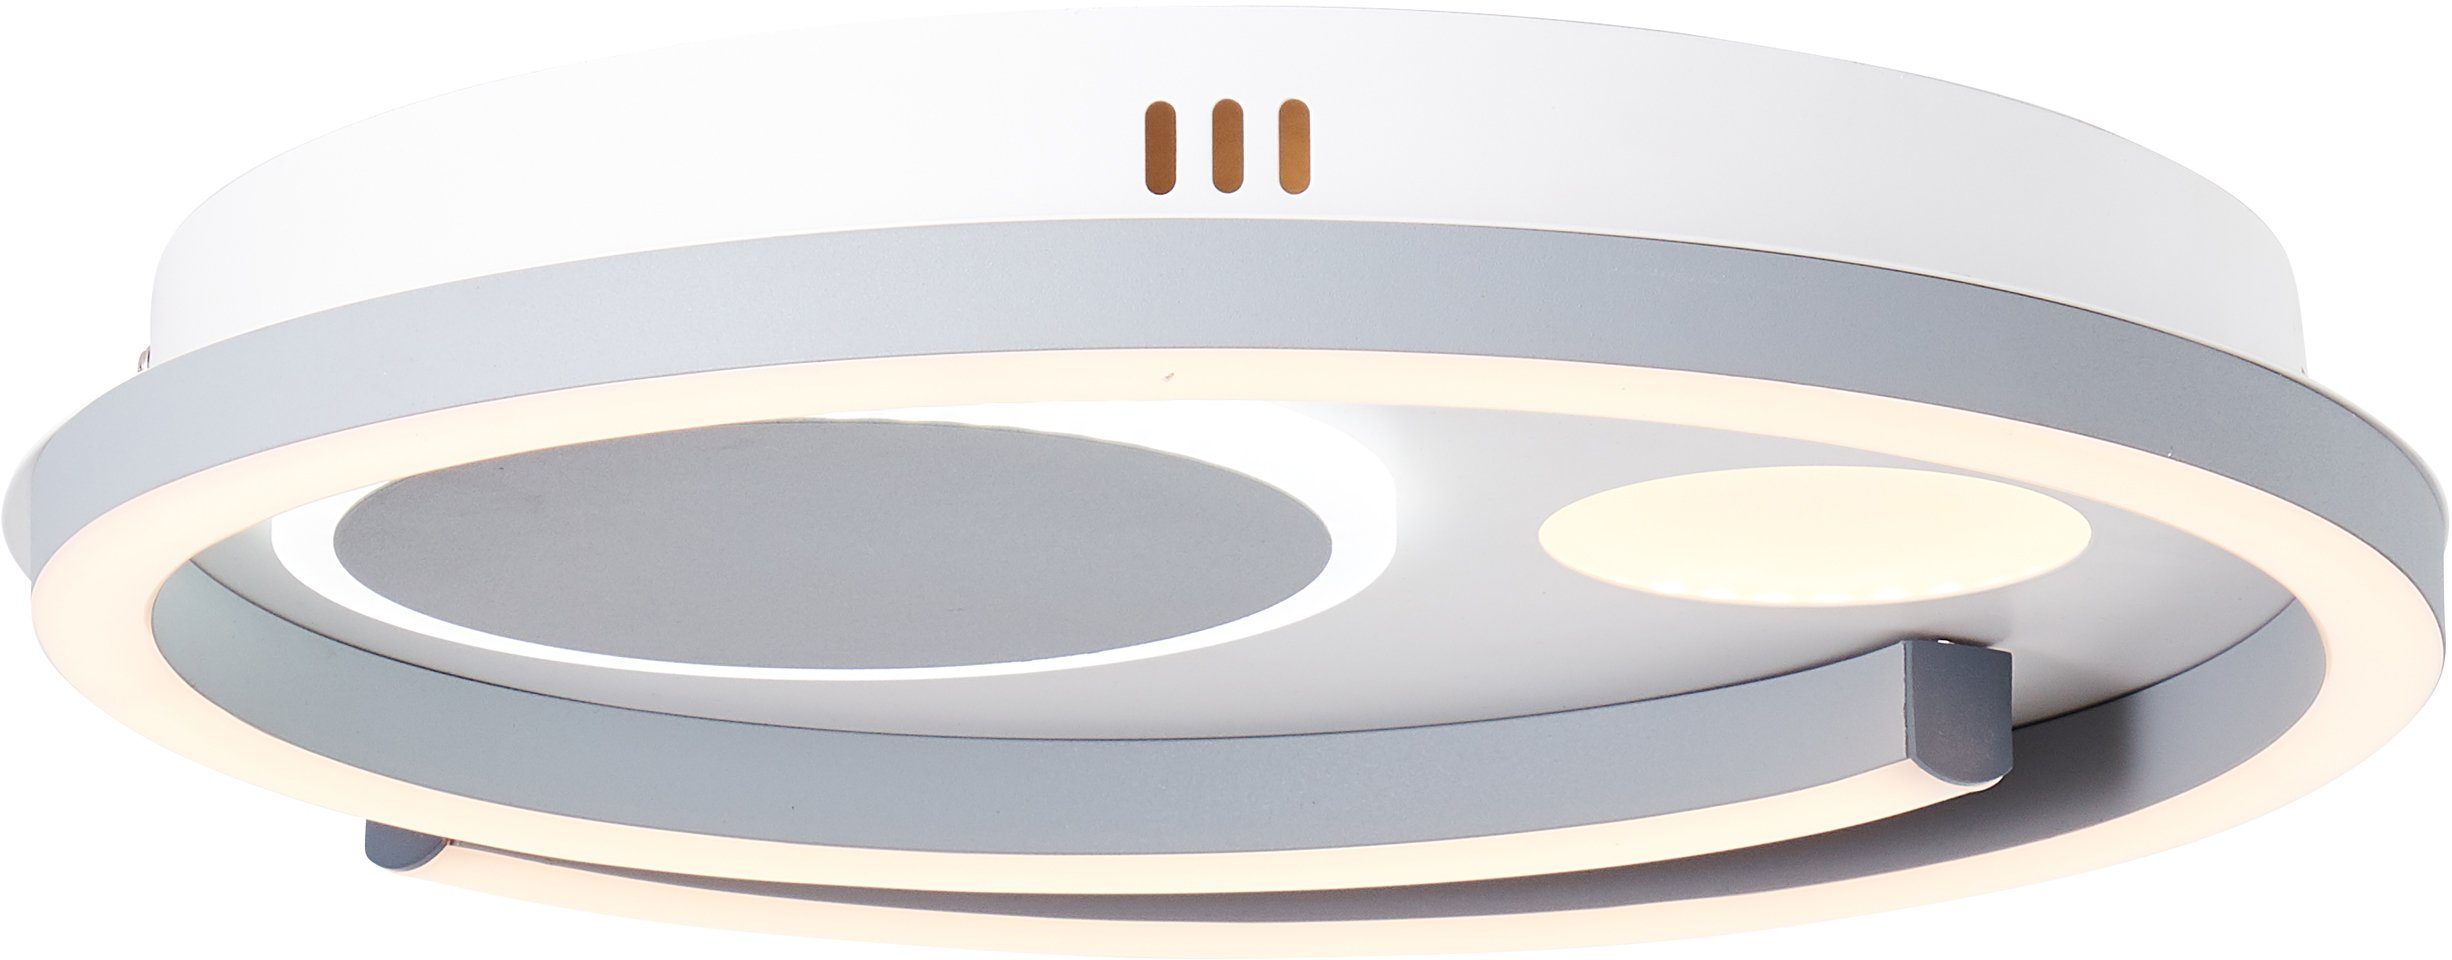 Brilliant Deckenleuchte Thekla, 3000-6000K, 40x40cm LED LED integrier weiß/schwarz, Thekla Deckenleuchte Lampe, 1x